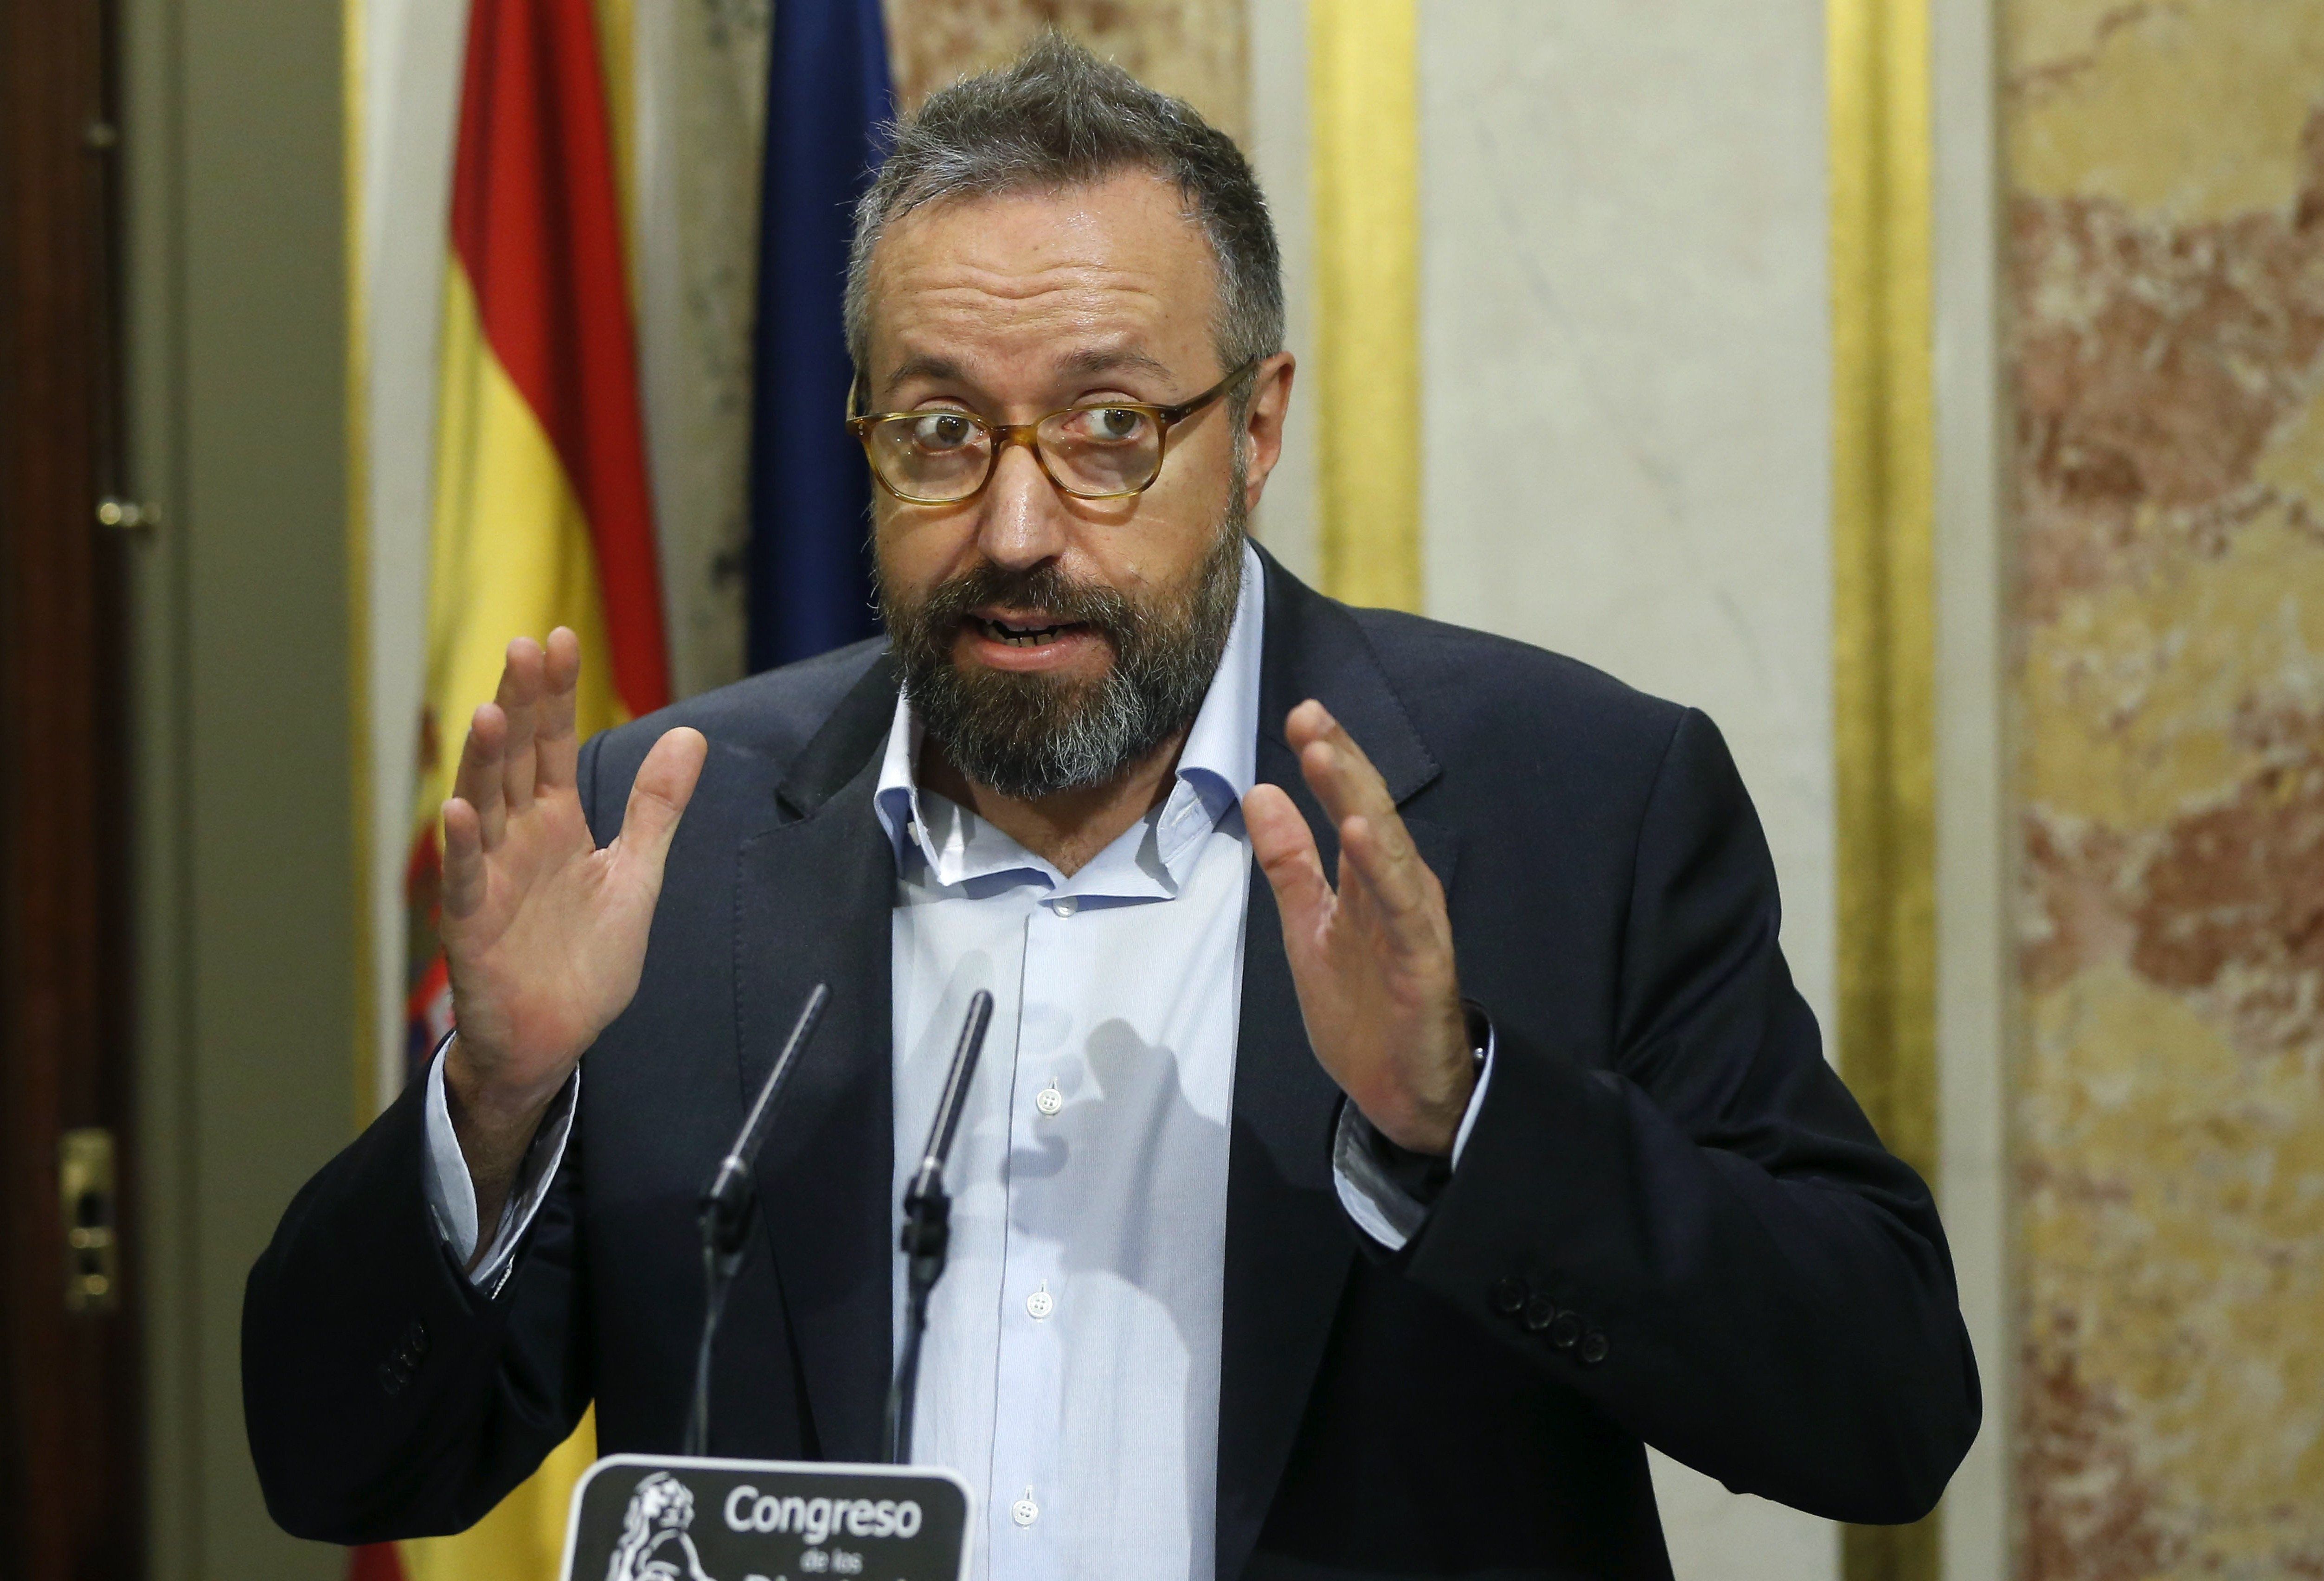 Girauta surt en defensa de Puigdemont per l'incident de la bandera